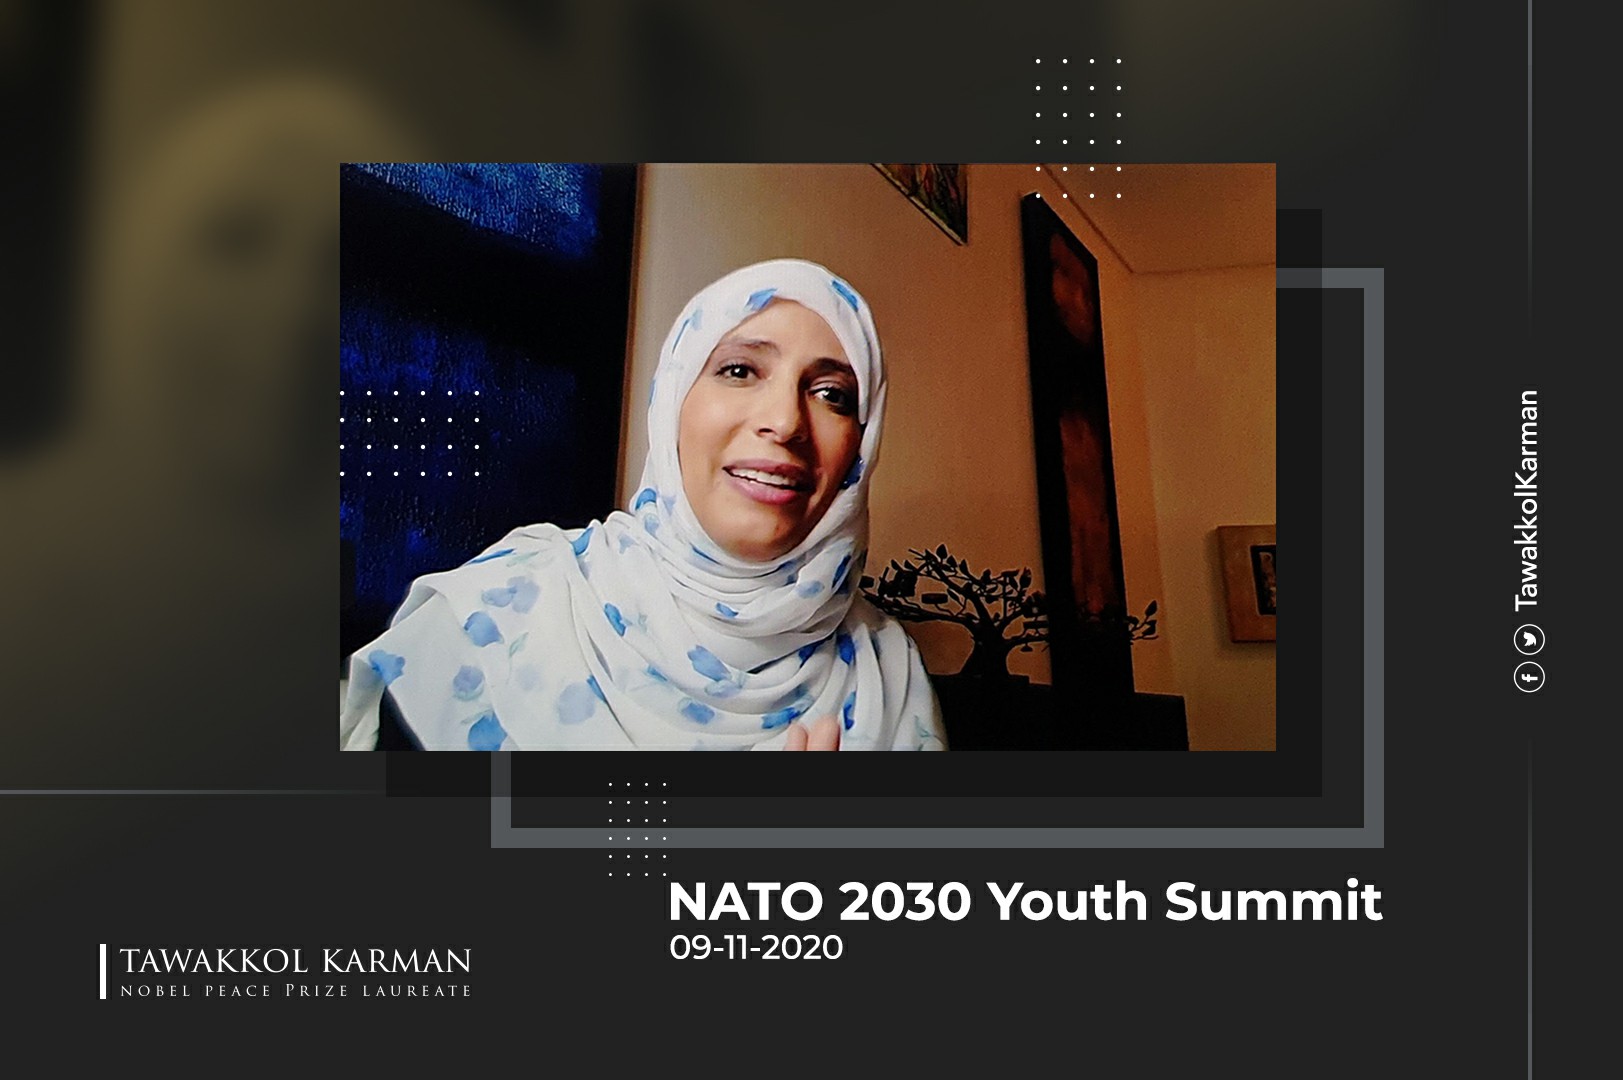 Tawakkol Karman’s Speech at the NATO 2030 Youth Summit